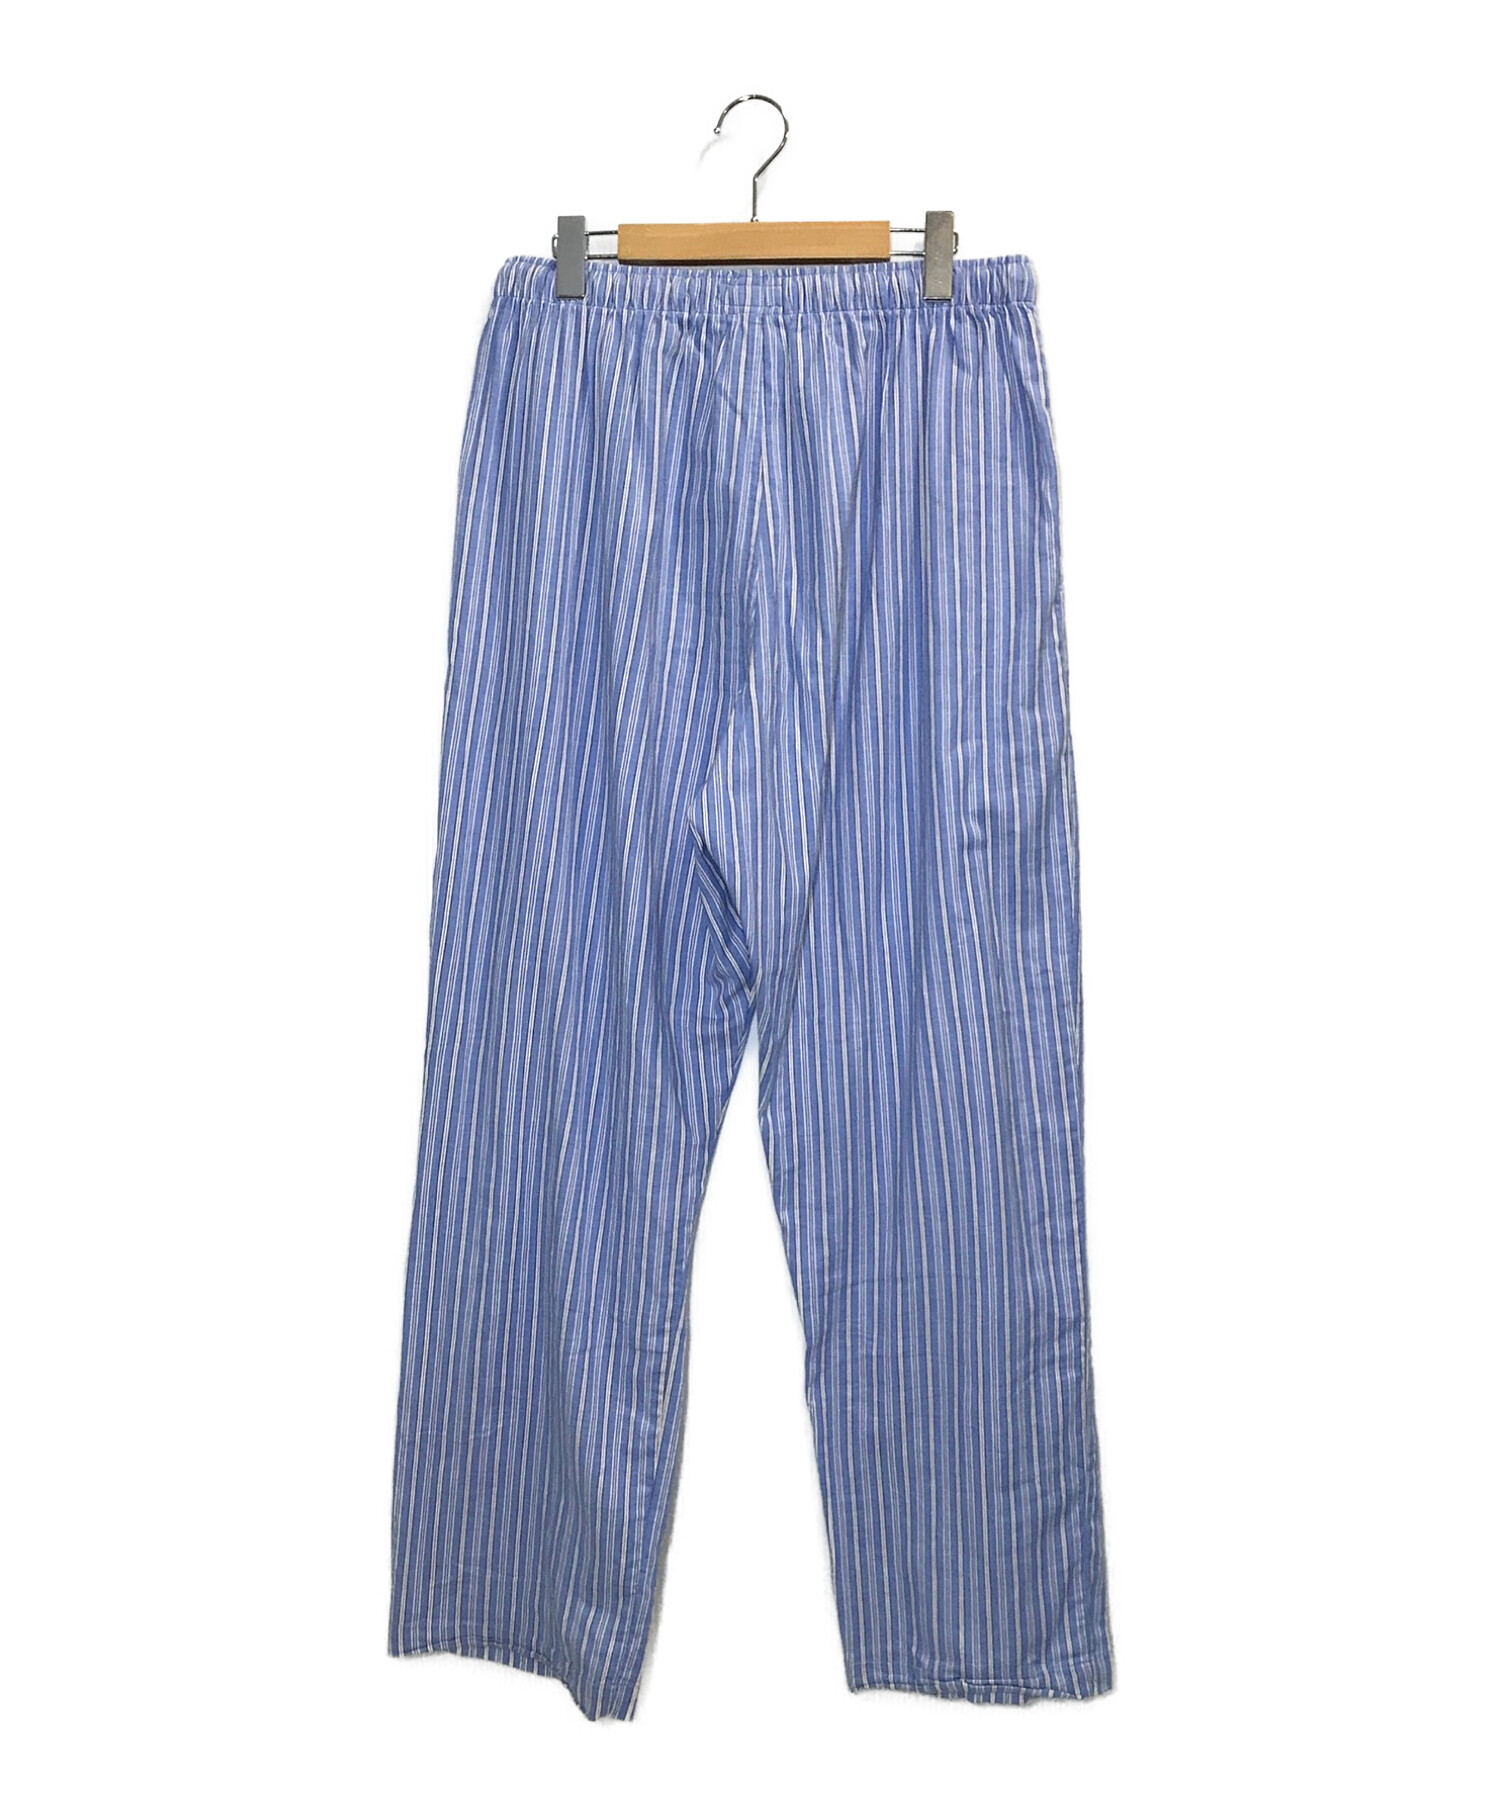 POLO RALPH LAUREN (ポロ・ラルフローレン) ストライプパジャマパンツ ブルー サイズ:L